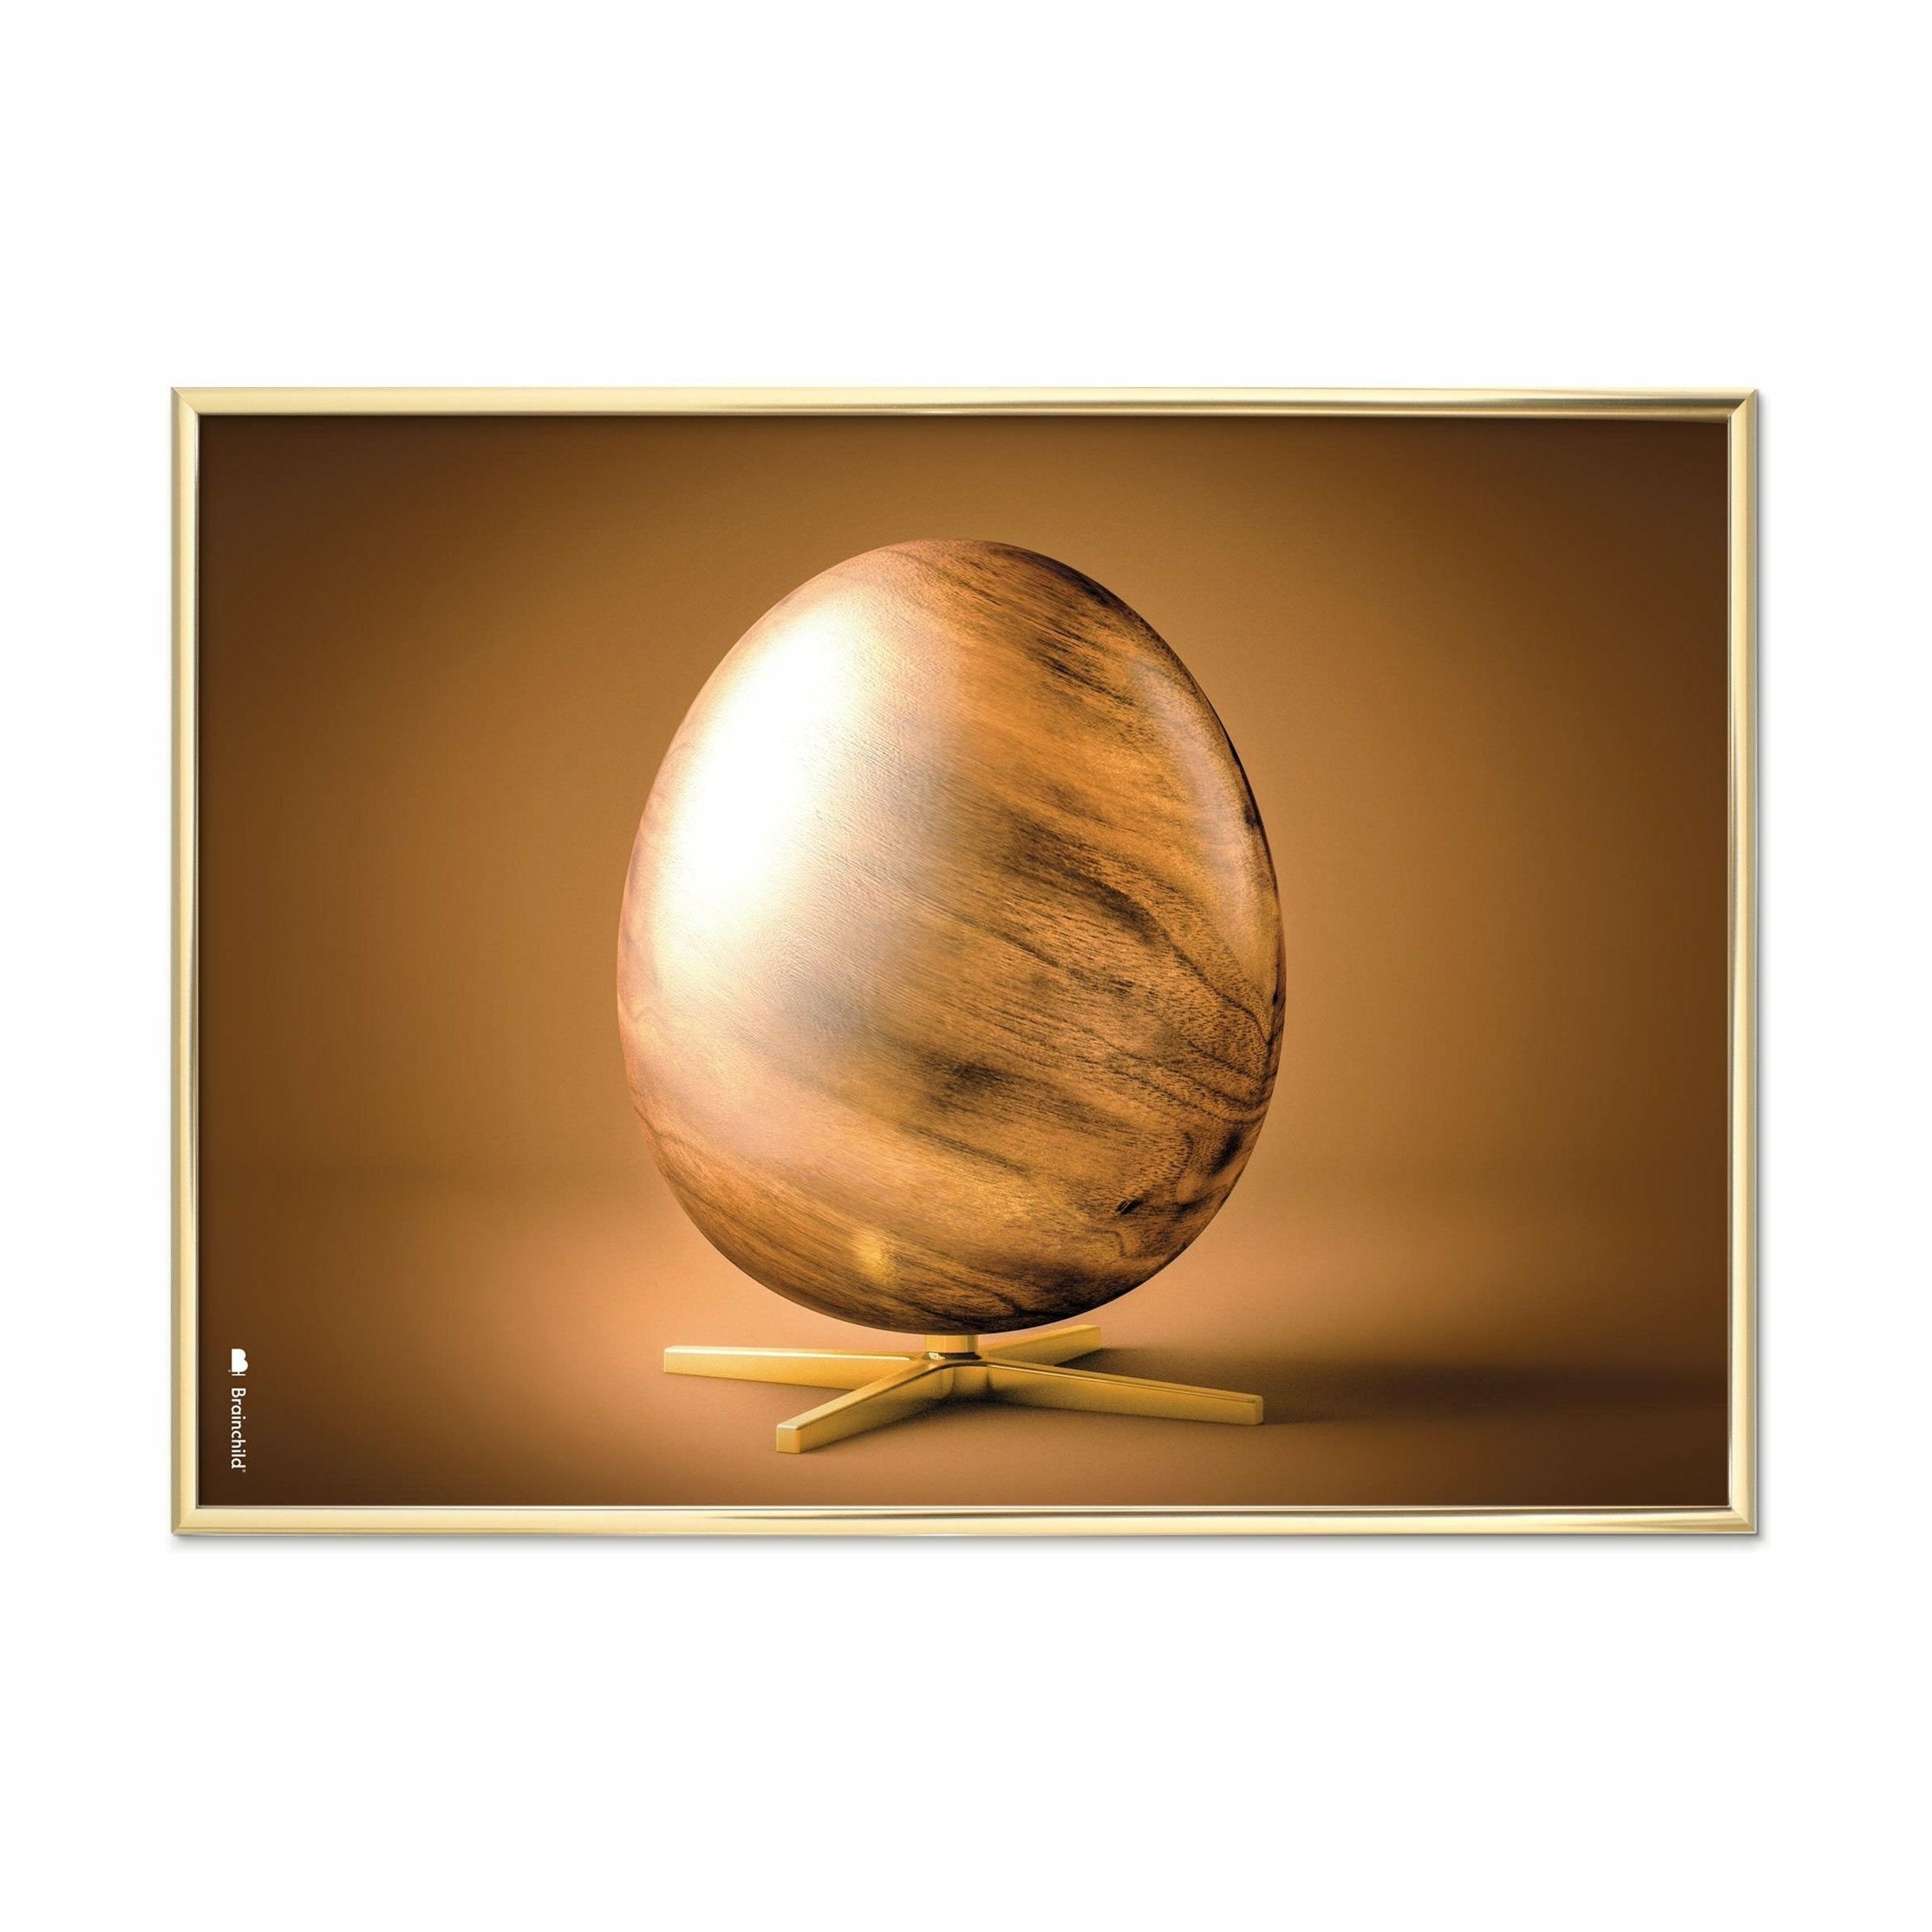 Póster de formato de cruce de huevo de creación, marco de latón A5, marrón